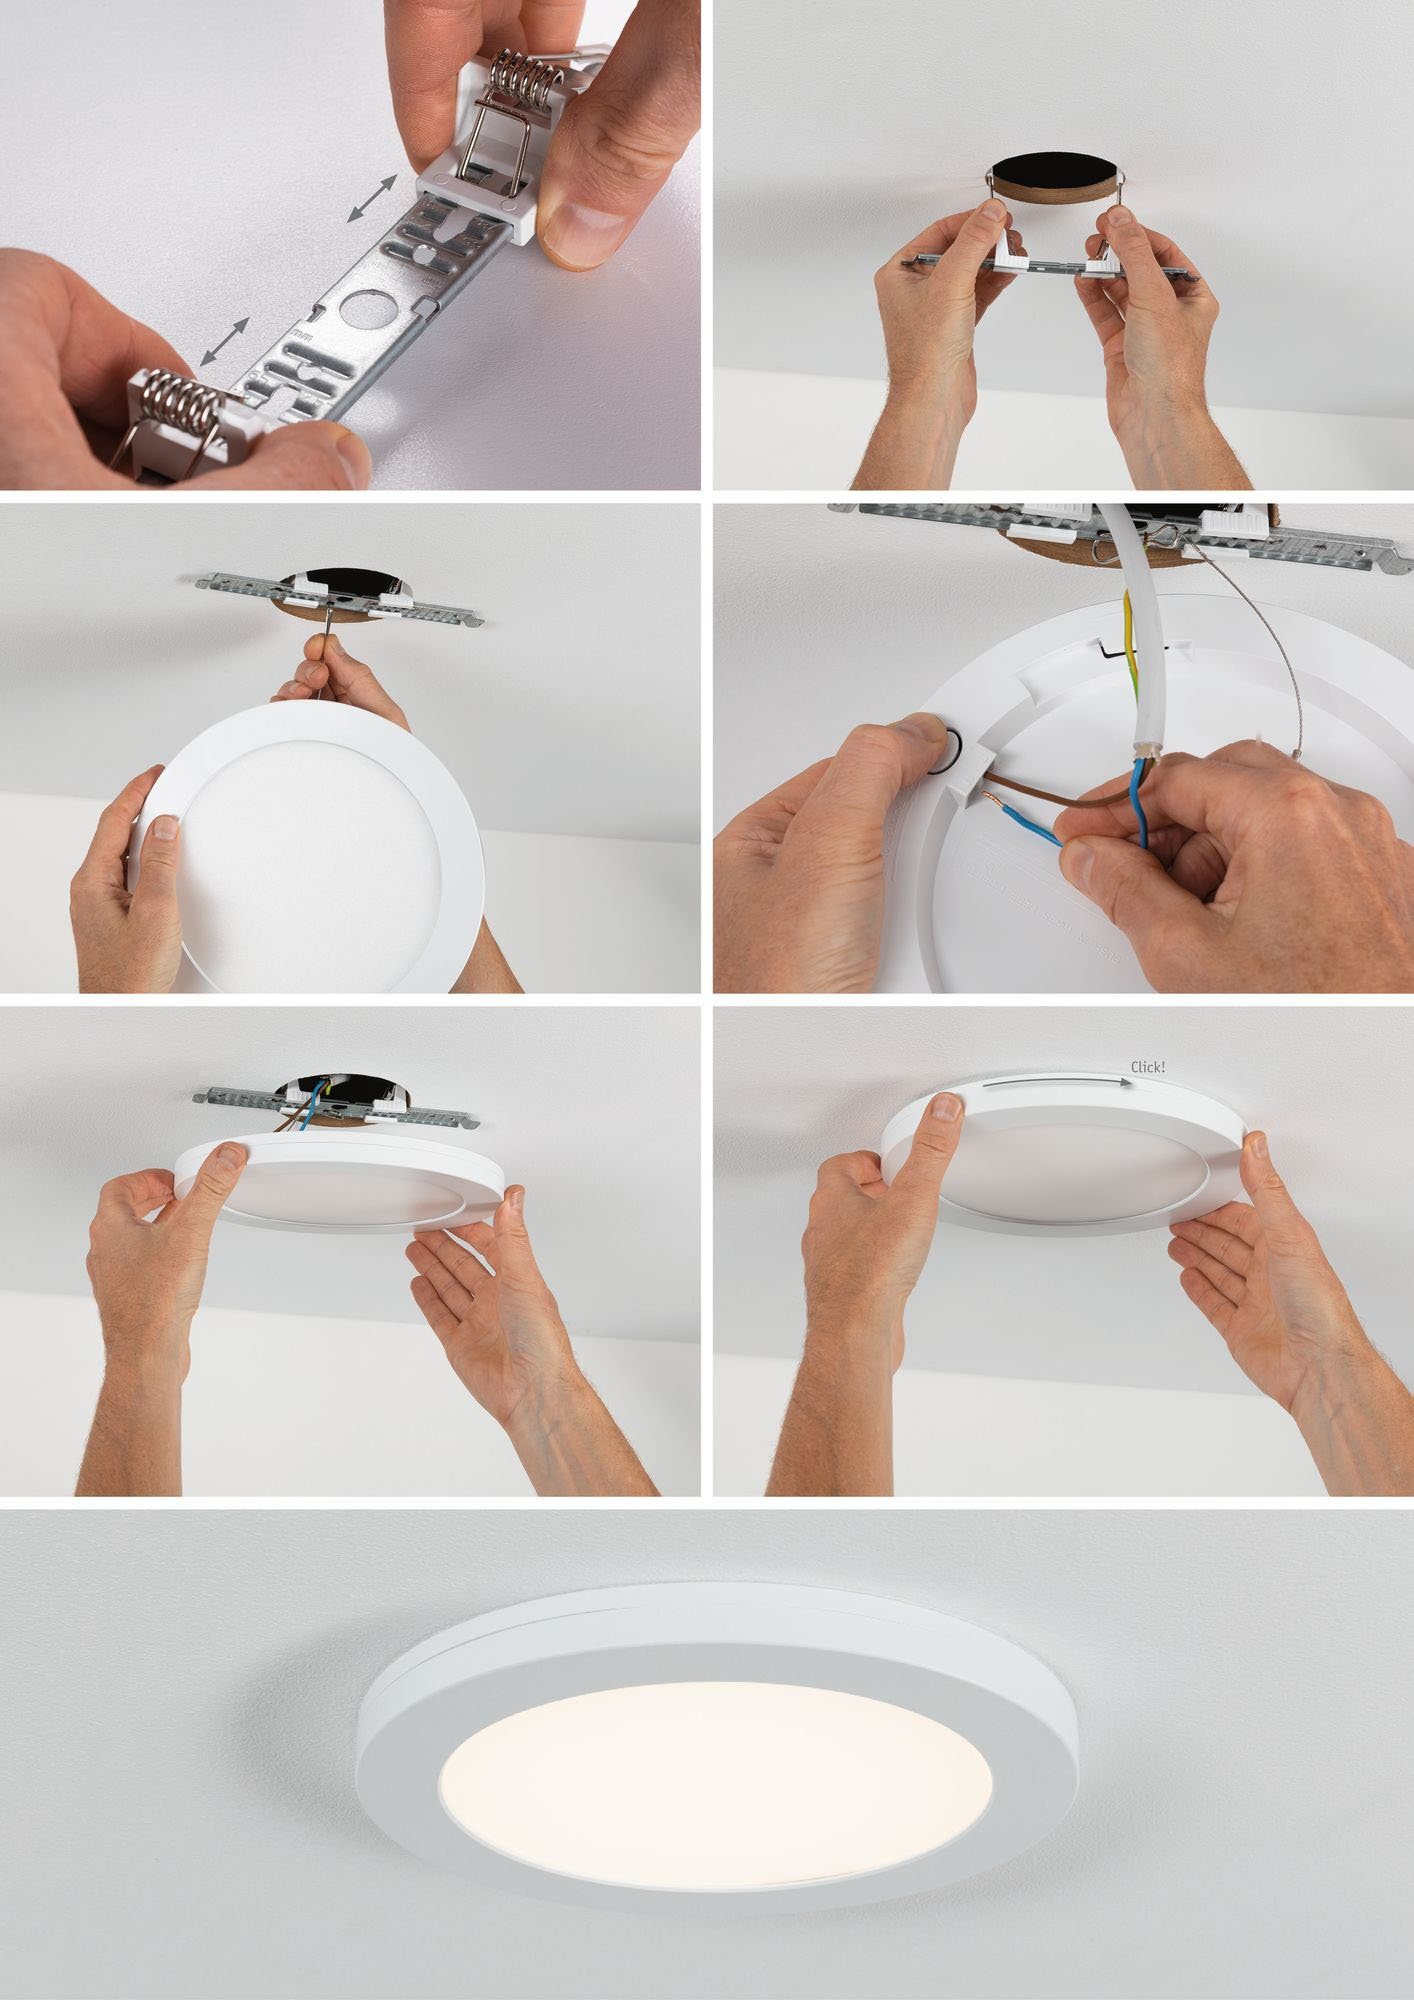 Paulmann LED Einbauleuchte fest Bewegungsmelder, integriert, Neutralweiß, LED-Modul LED Cover-it